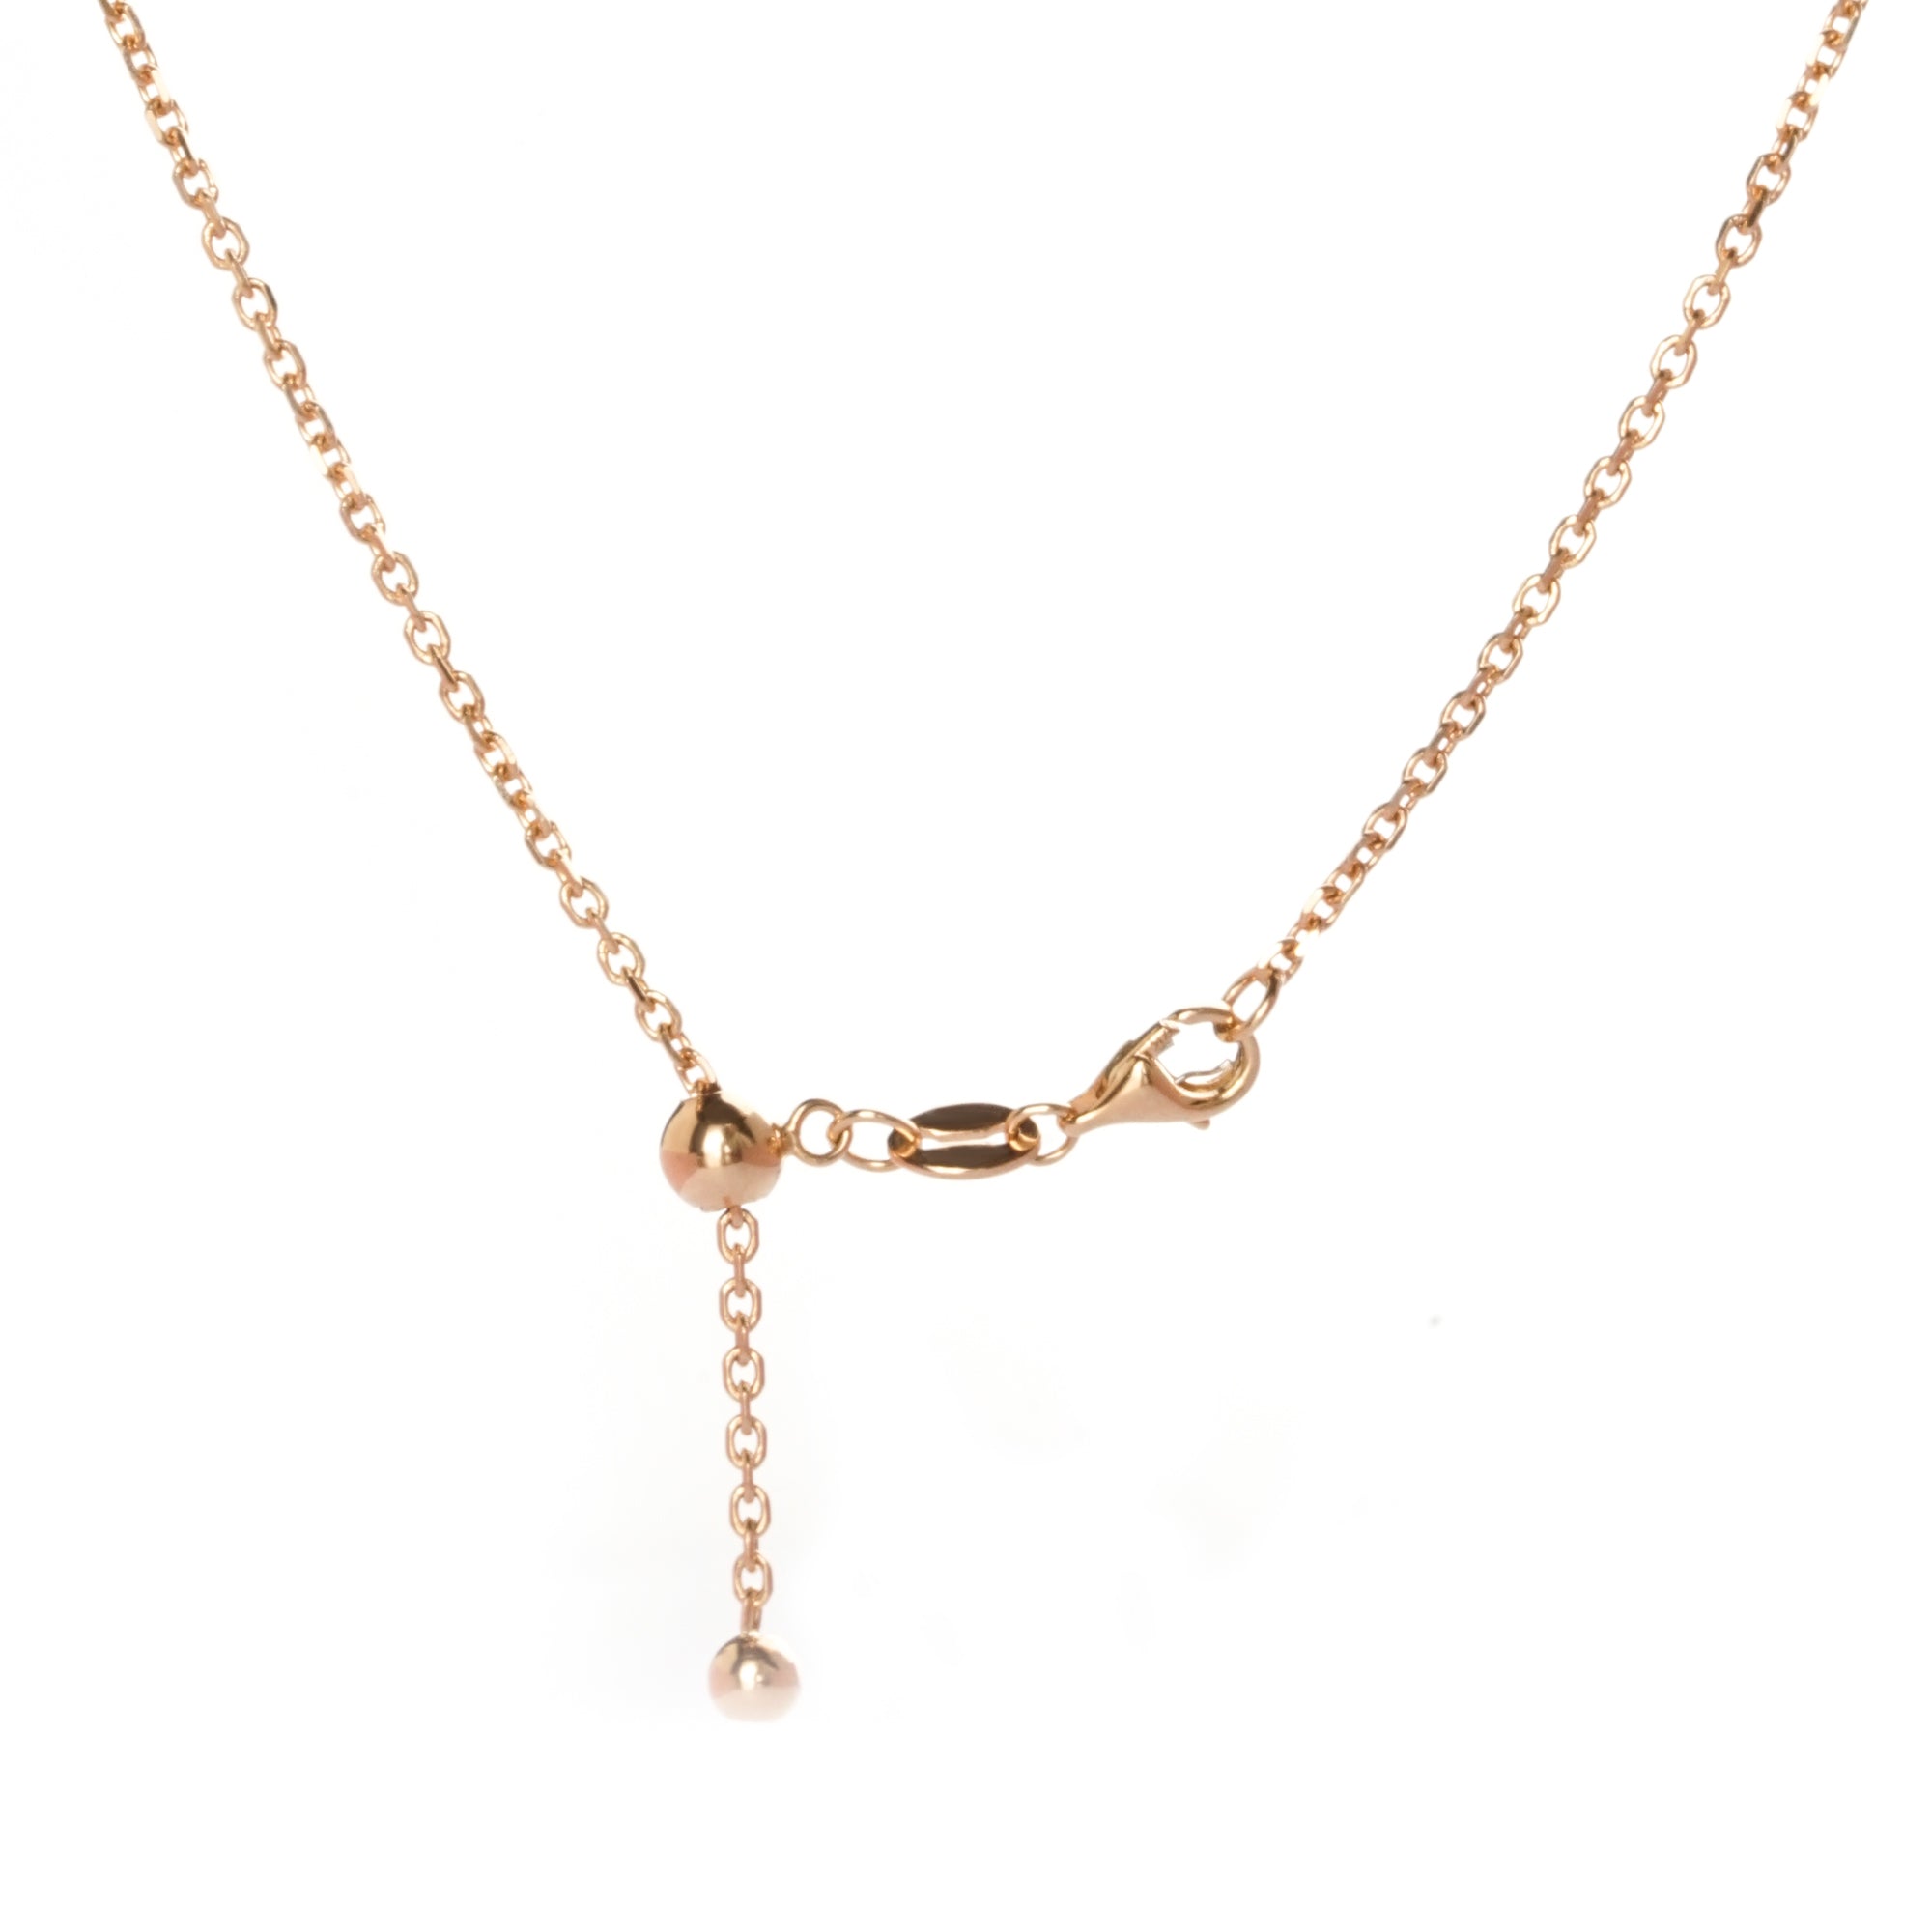 Skyla Gold Necklace - Milky Way - Juene Jewelry